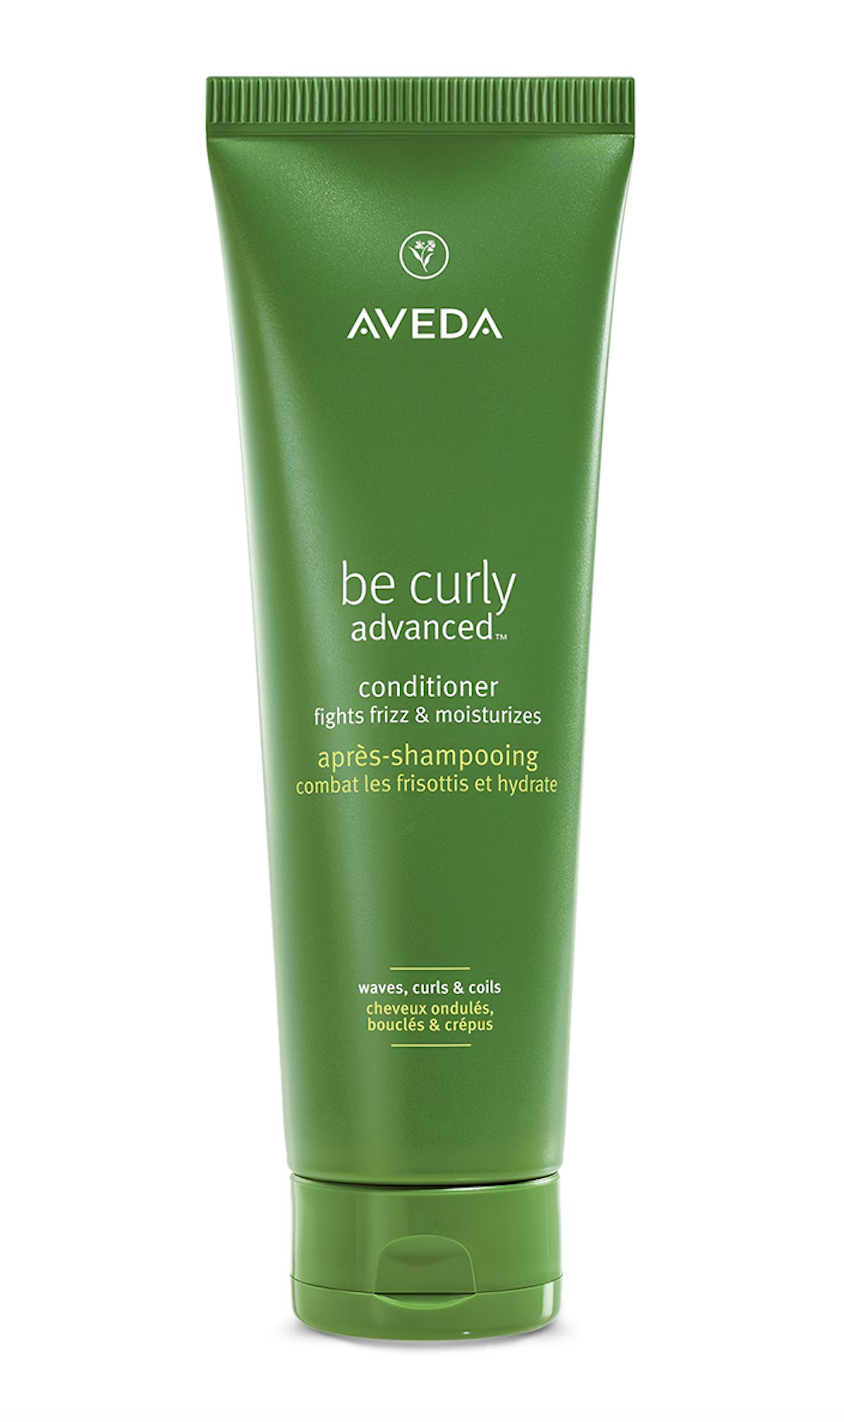 Aveda Be Curly Advanced™ Trio Bundle w/Curl Enhancer Cream 200ml